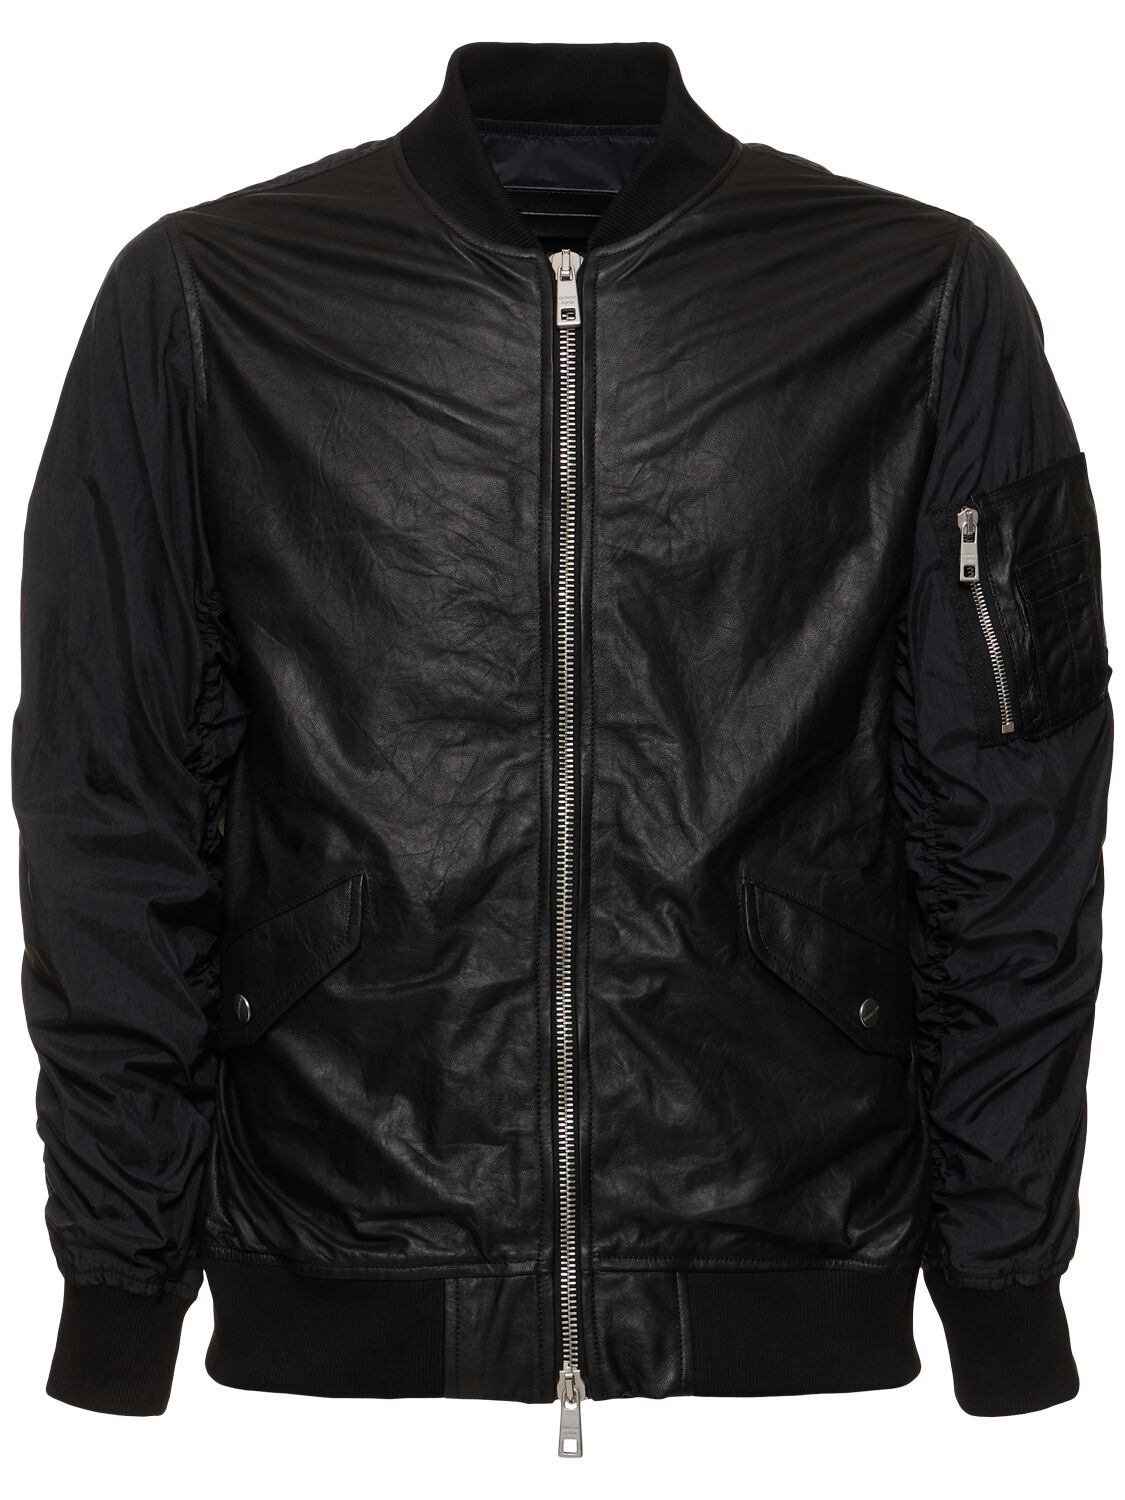 Wrinkled Leather & Nylon Bomber Jacket